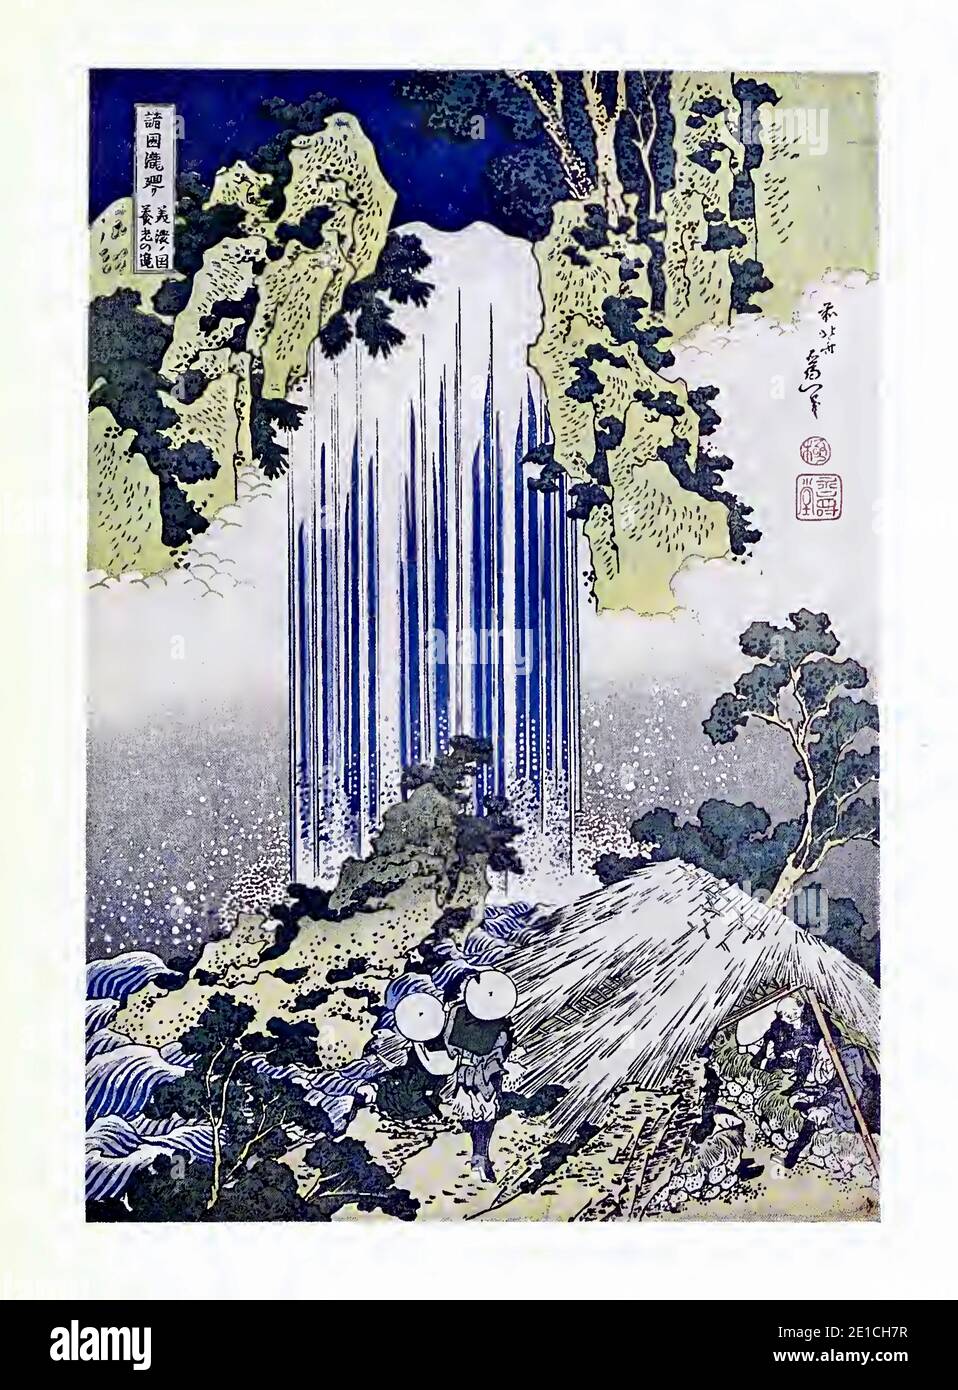 La chute d'eau de Yoro par Hokusai. Banque D'Images